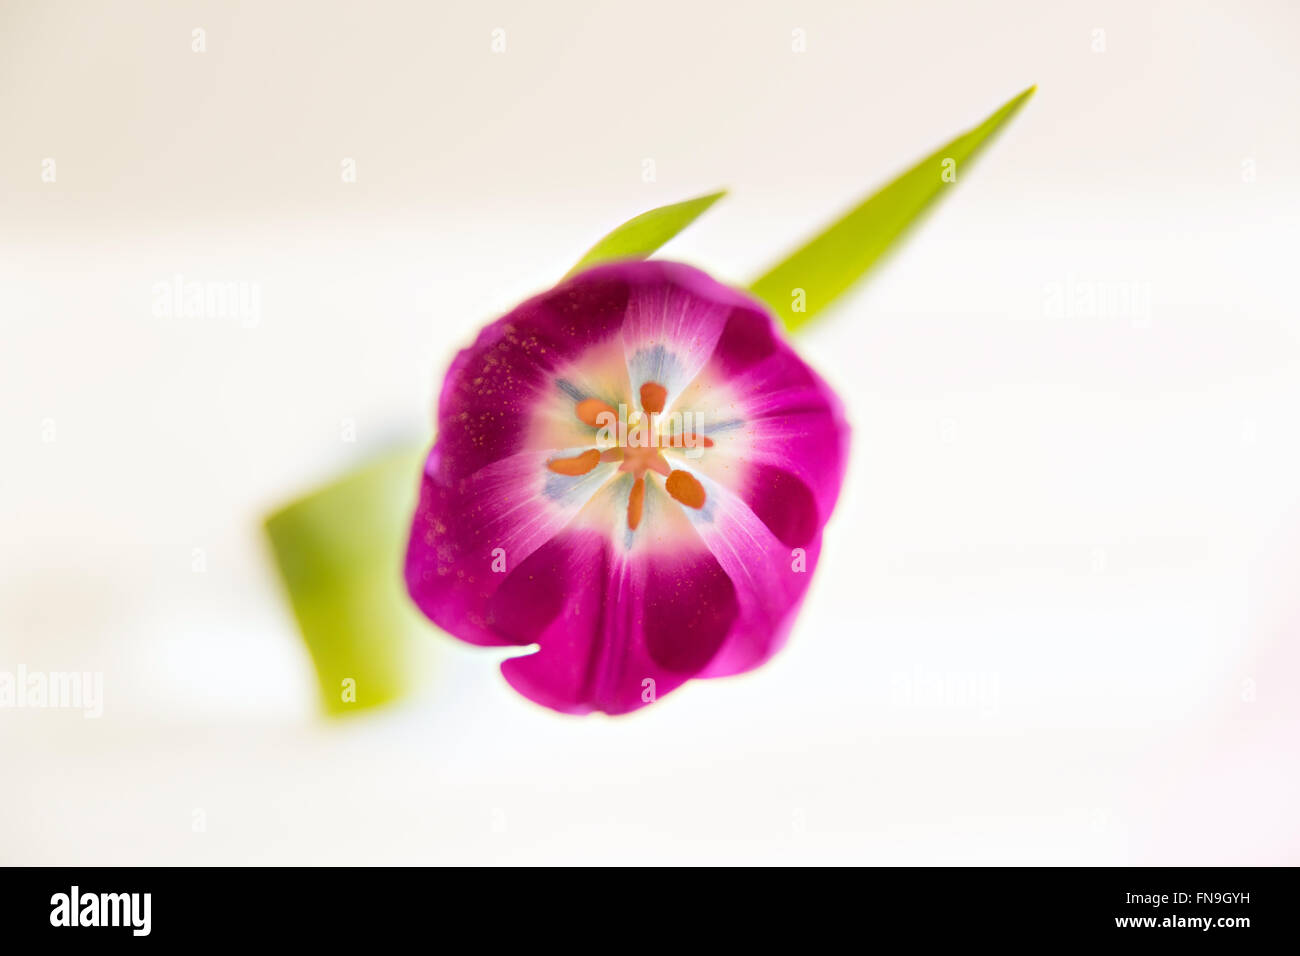 Imagen de solo tulip, vista superior Foto de stock